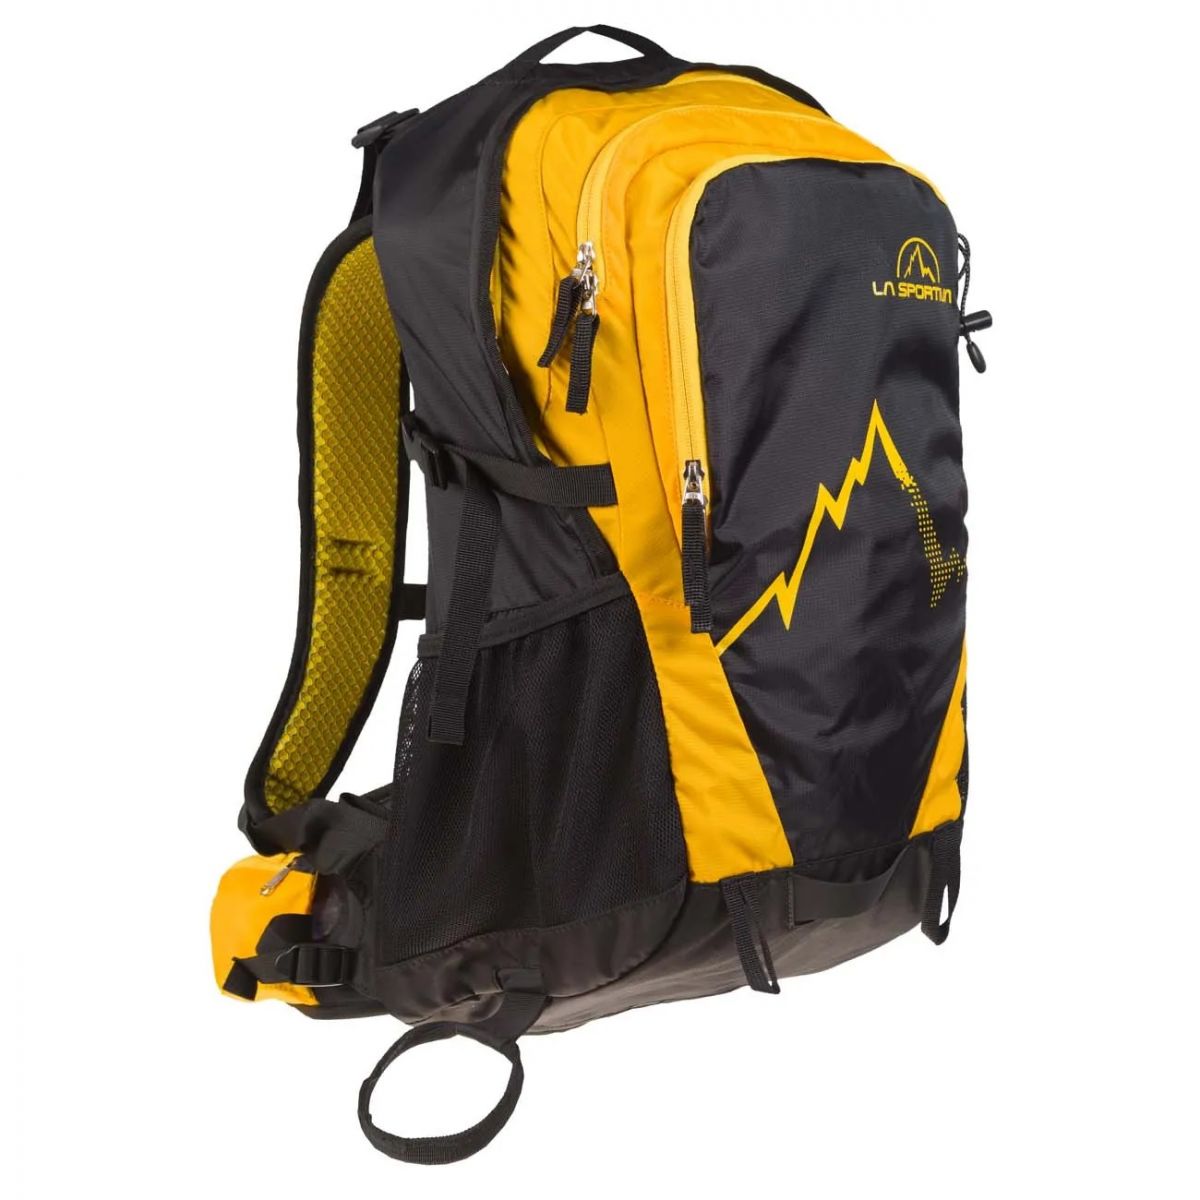 La Sportiva A.T. 30 Backpack 30 litros - Naka Outdoors - Tienda de escalada